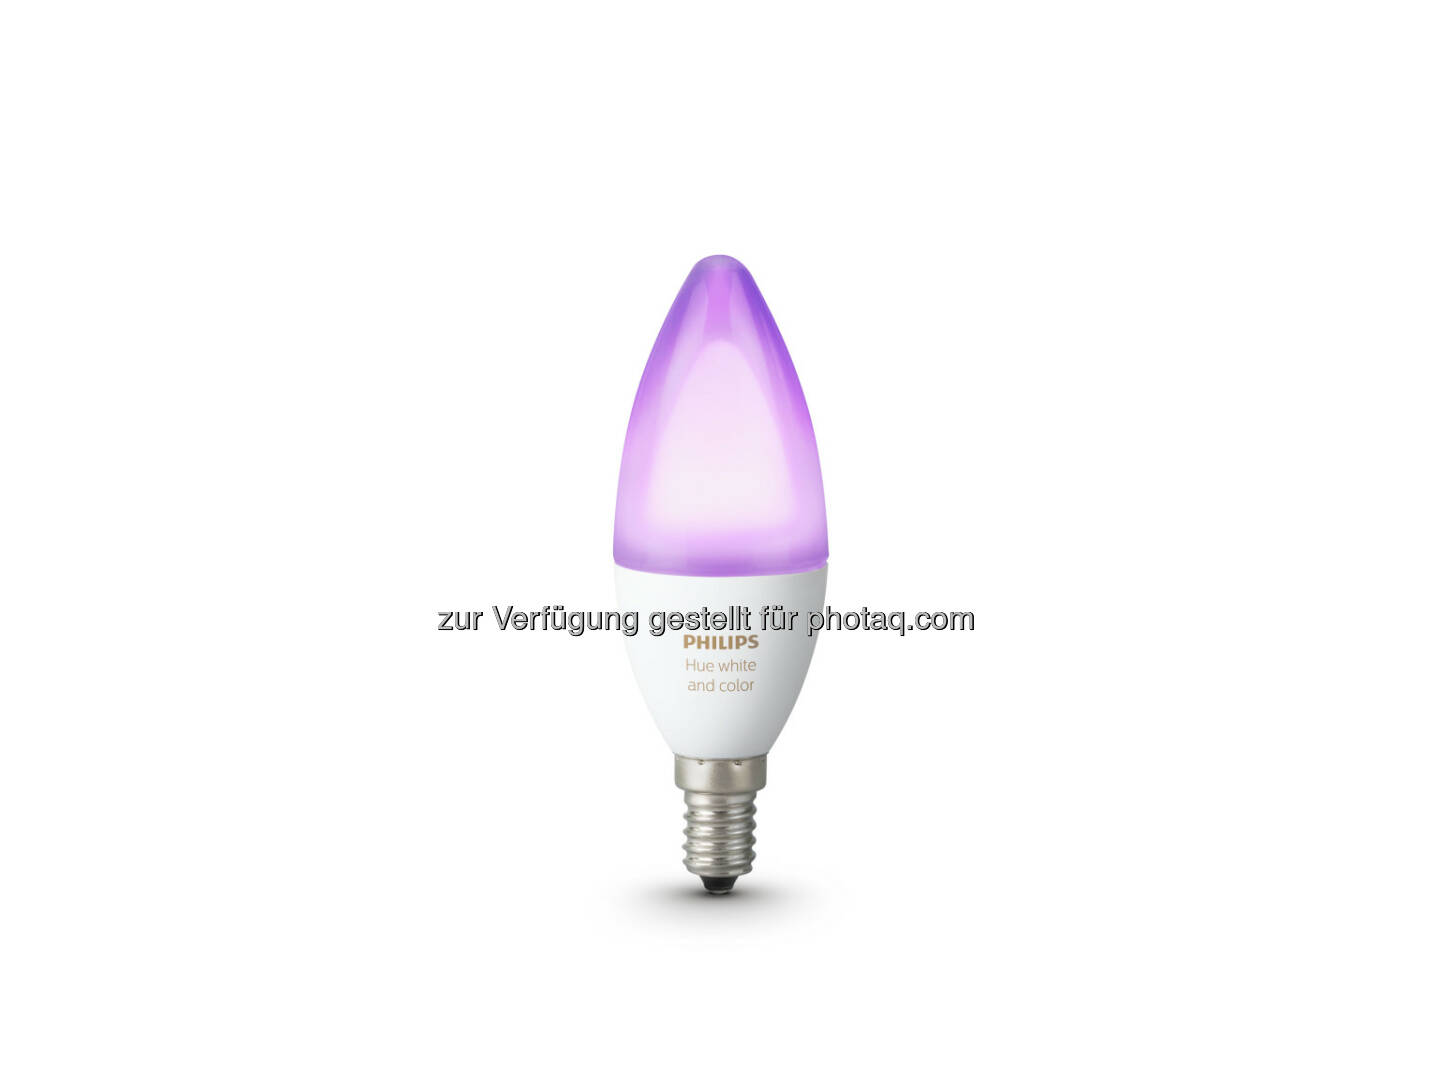 Die Sortimentserweiterung bietet auch gleichzeitig noch sattere Farben. - Philips Lighting Austria GmbH: Smarte Kerzenlichtstimmung: Zwei neue Philips Hue-Lampen mit E14-Fassung ab April erhältlich (Fotocredit: Philips Lighting)